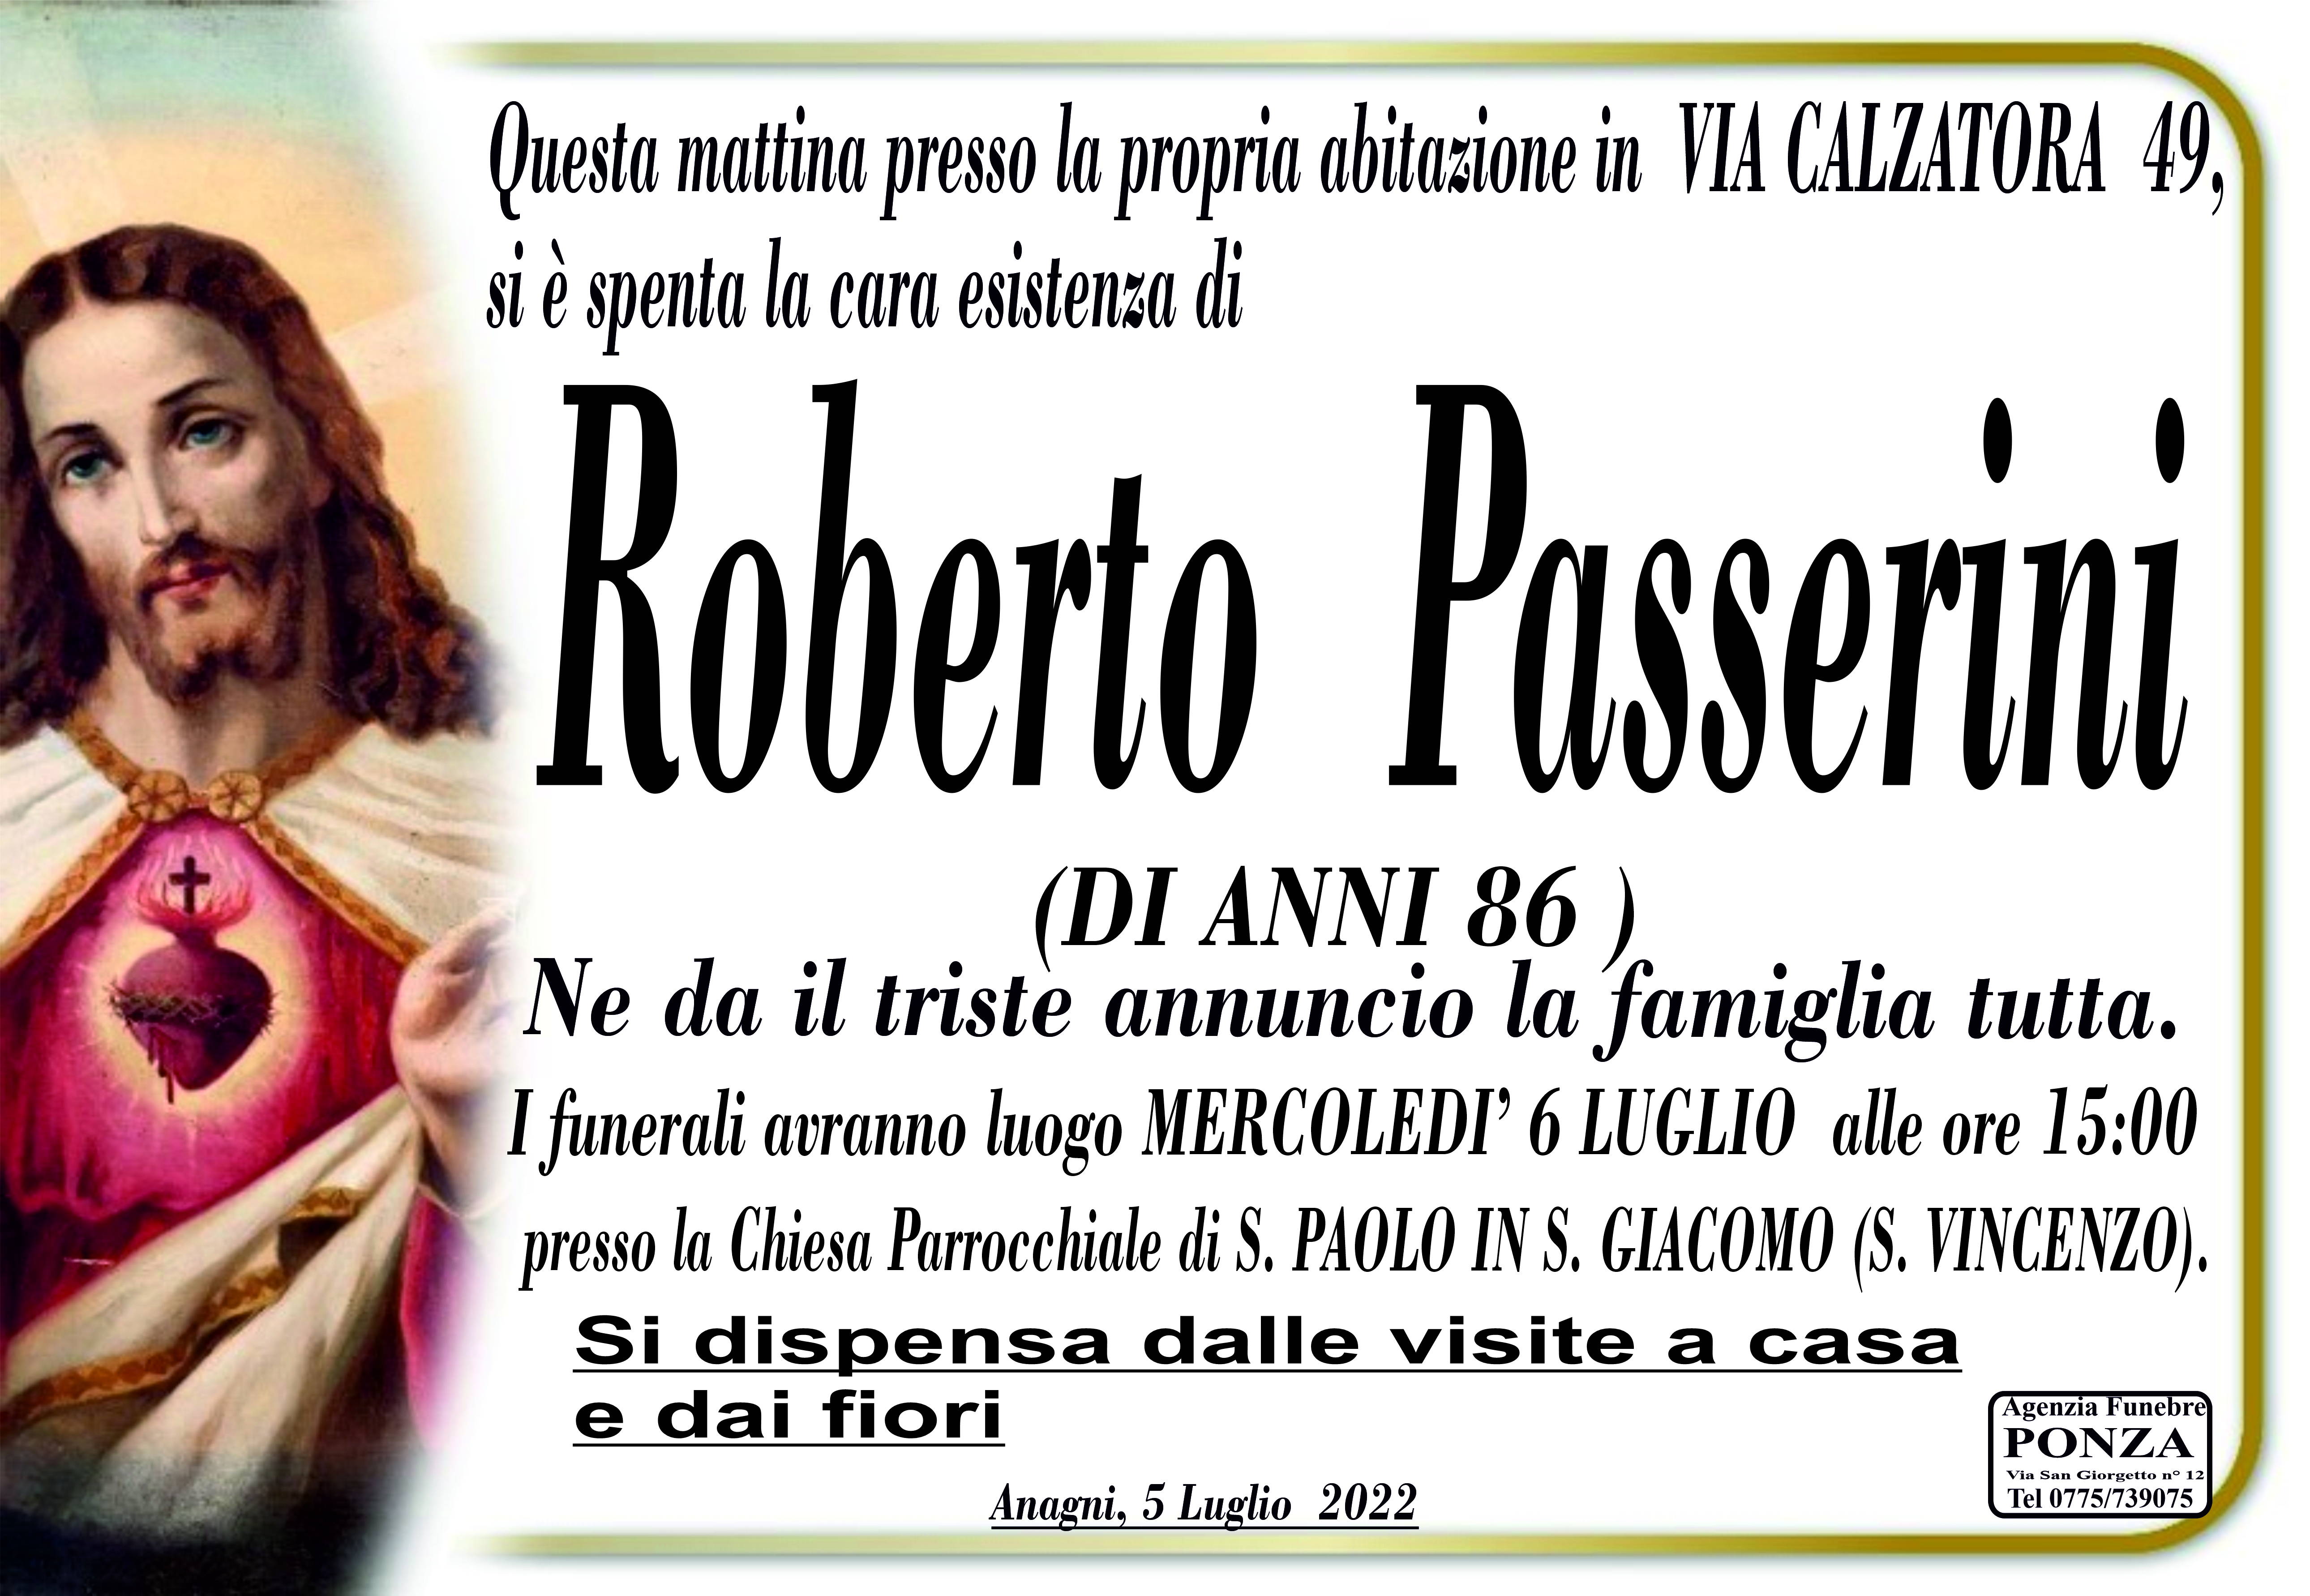 Roberto Passerini